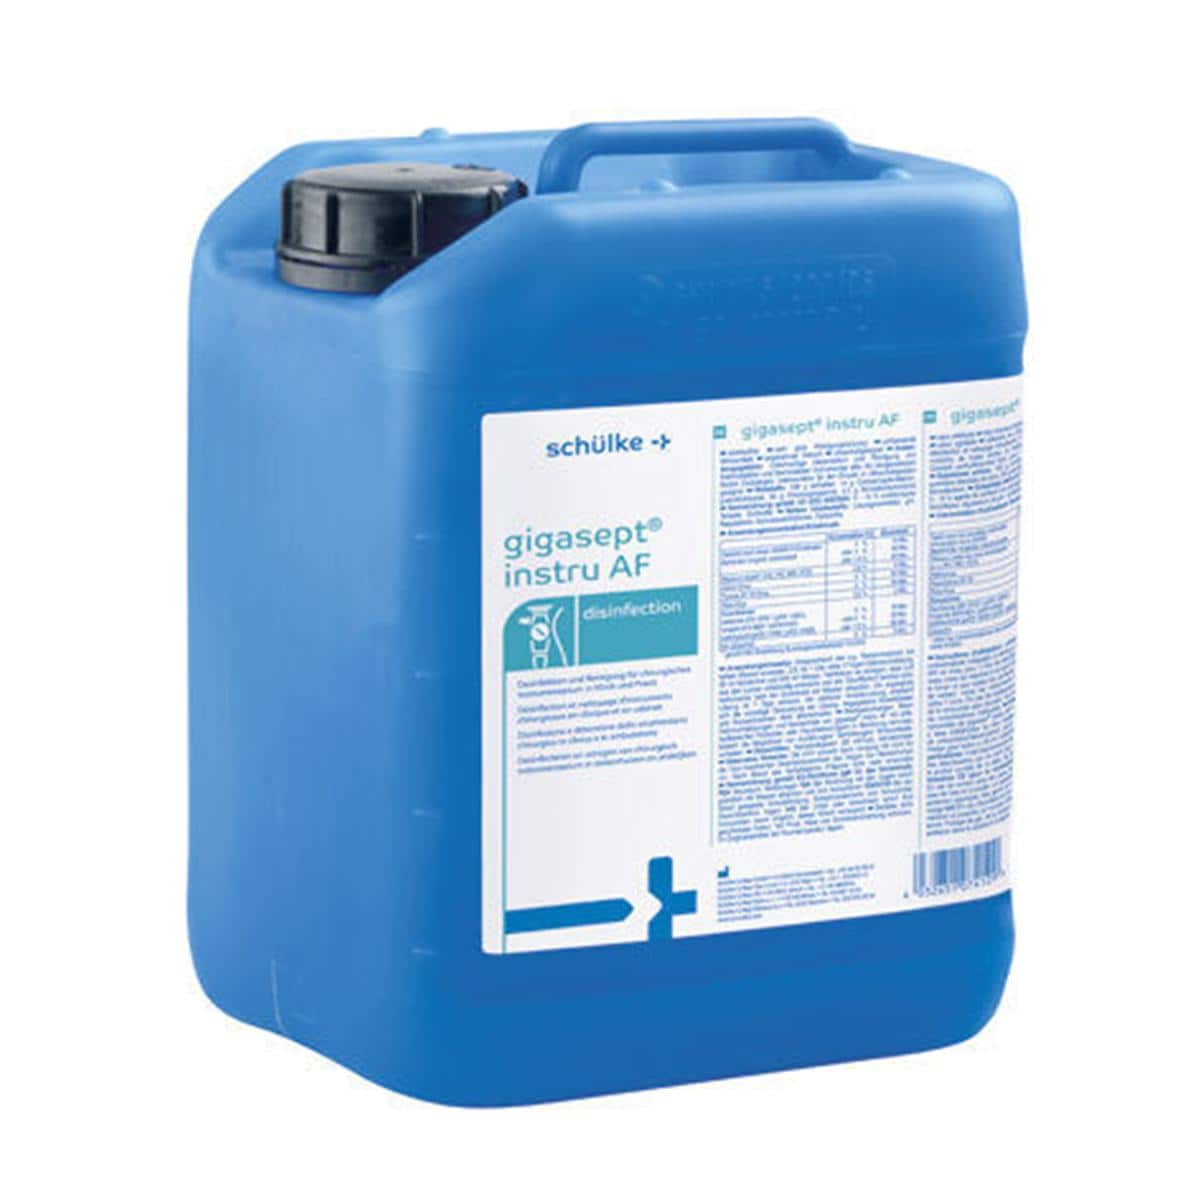 Gigasept Instru AF - Can, 5 liter